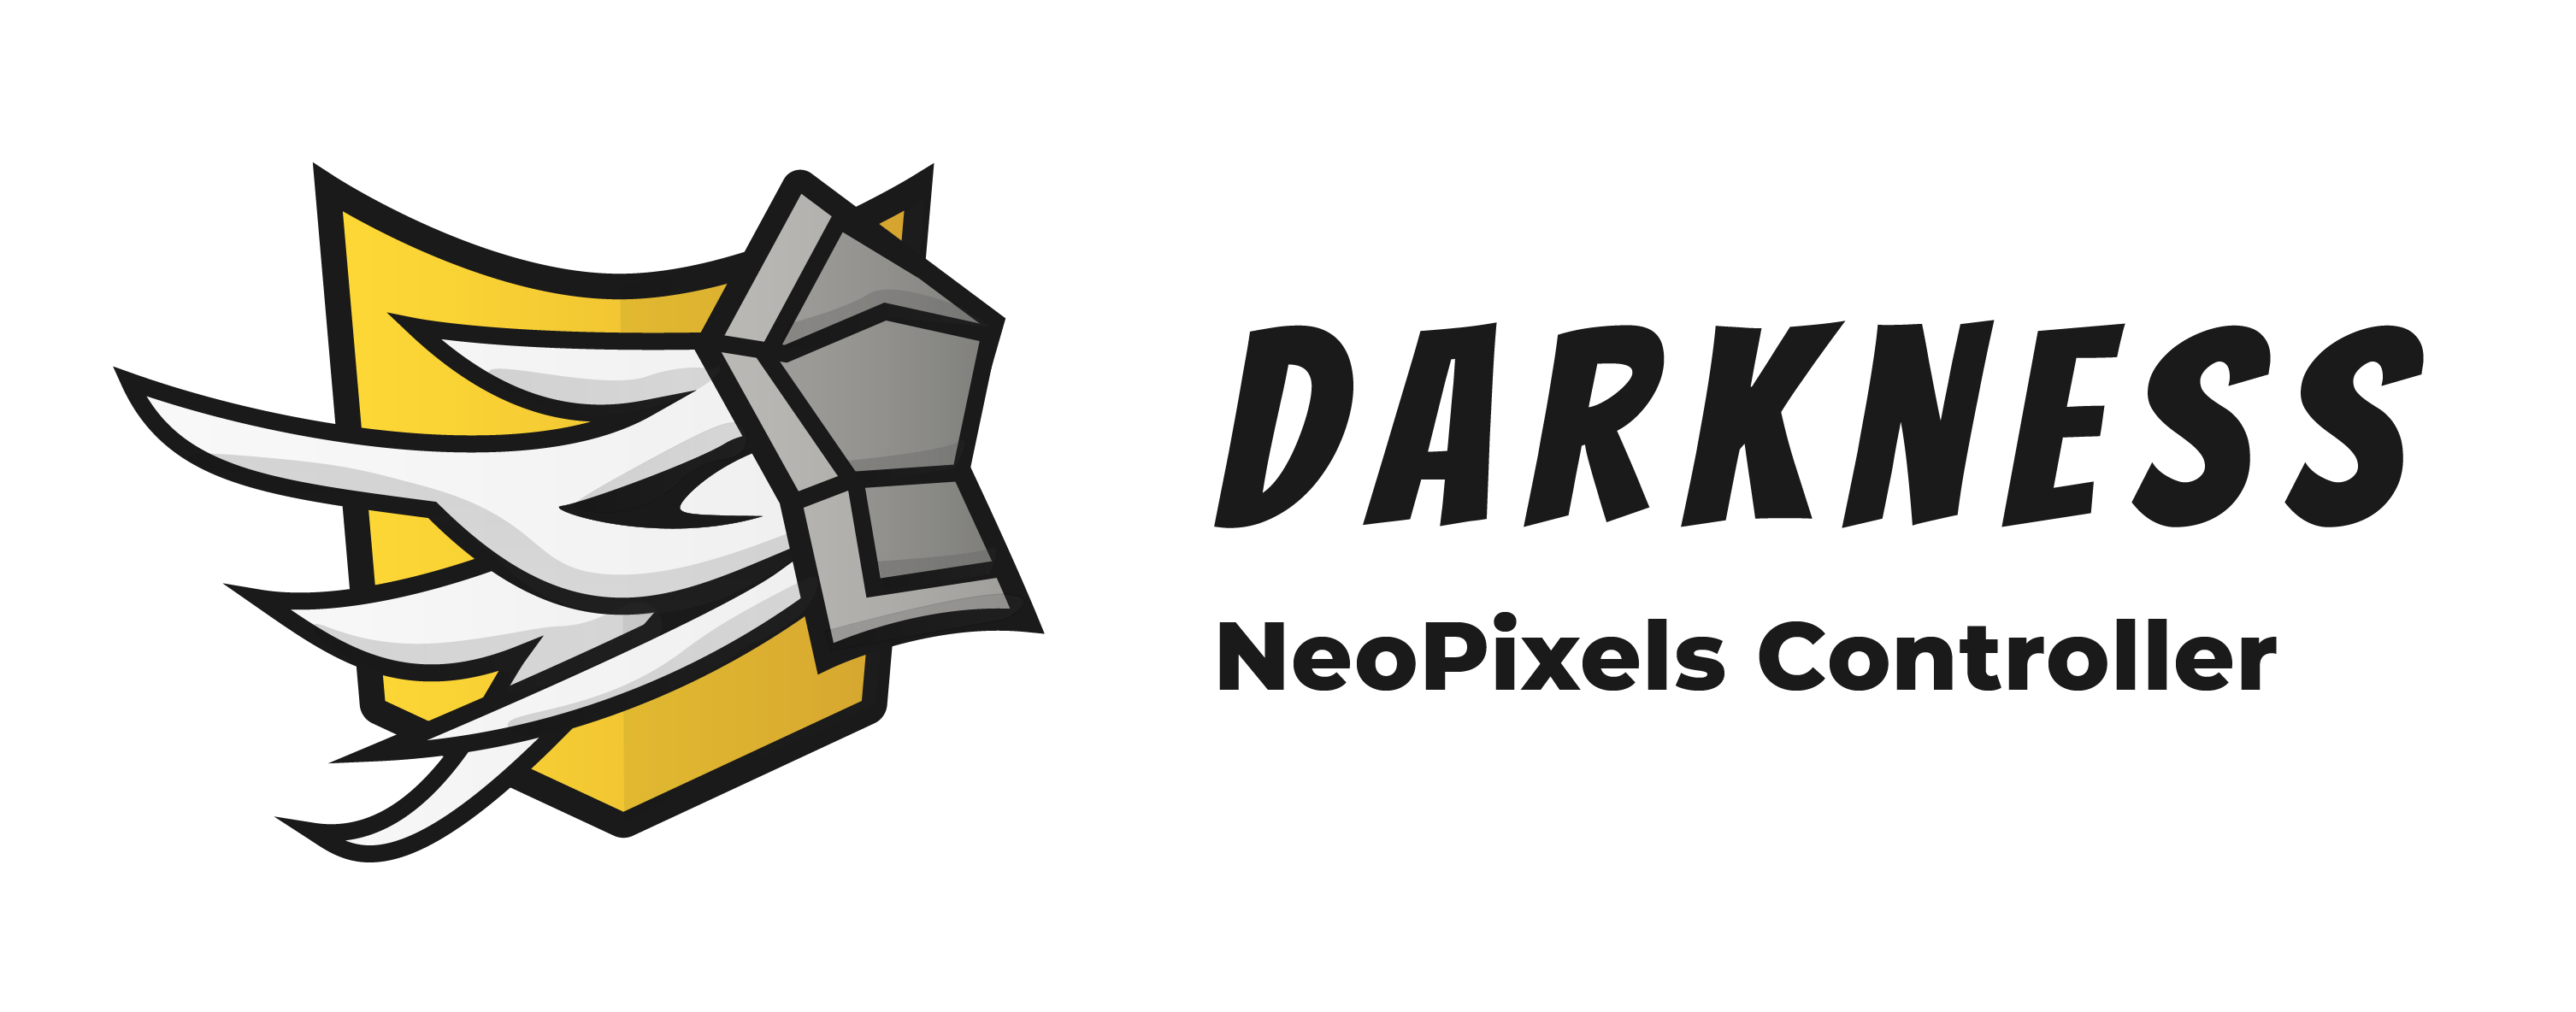 Darkness – NeoPixels Controller